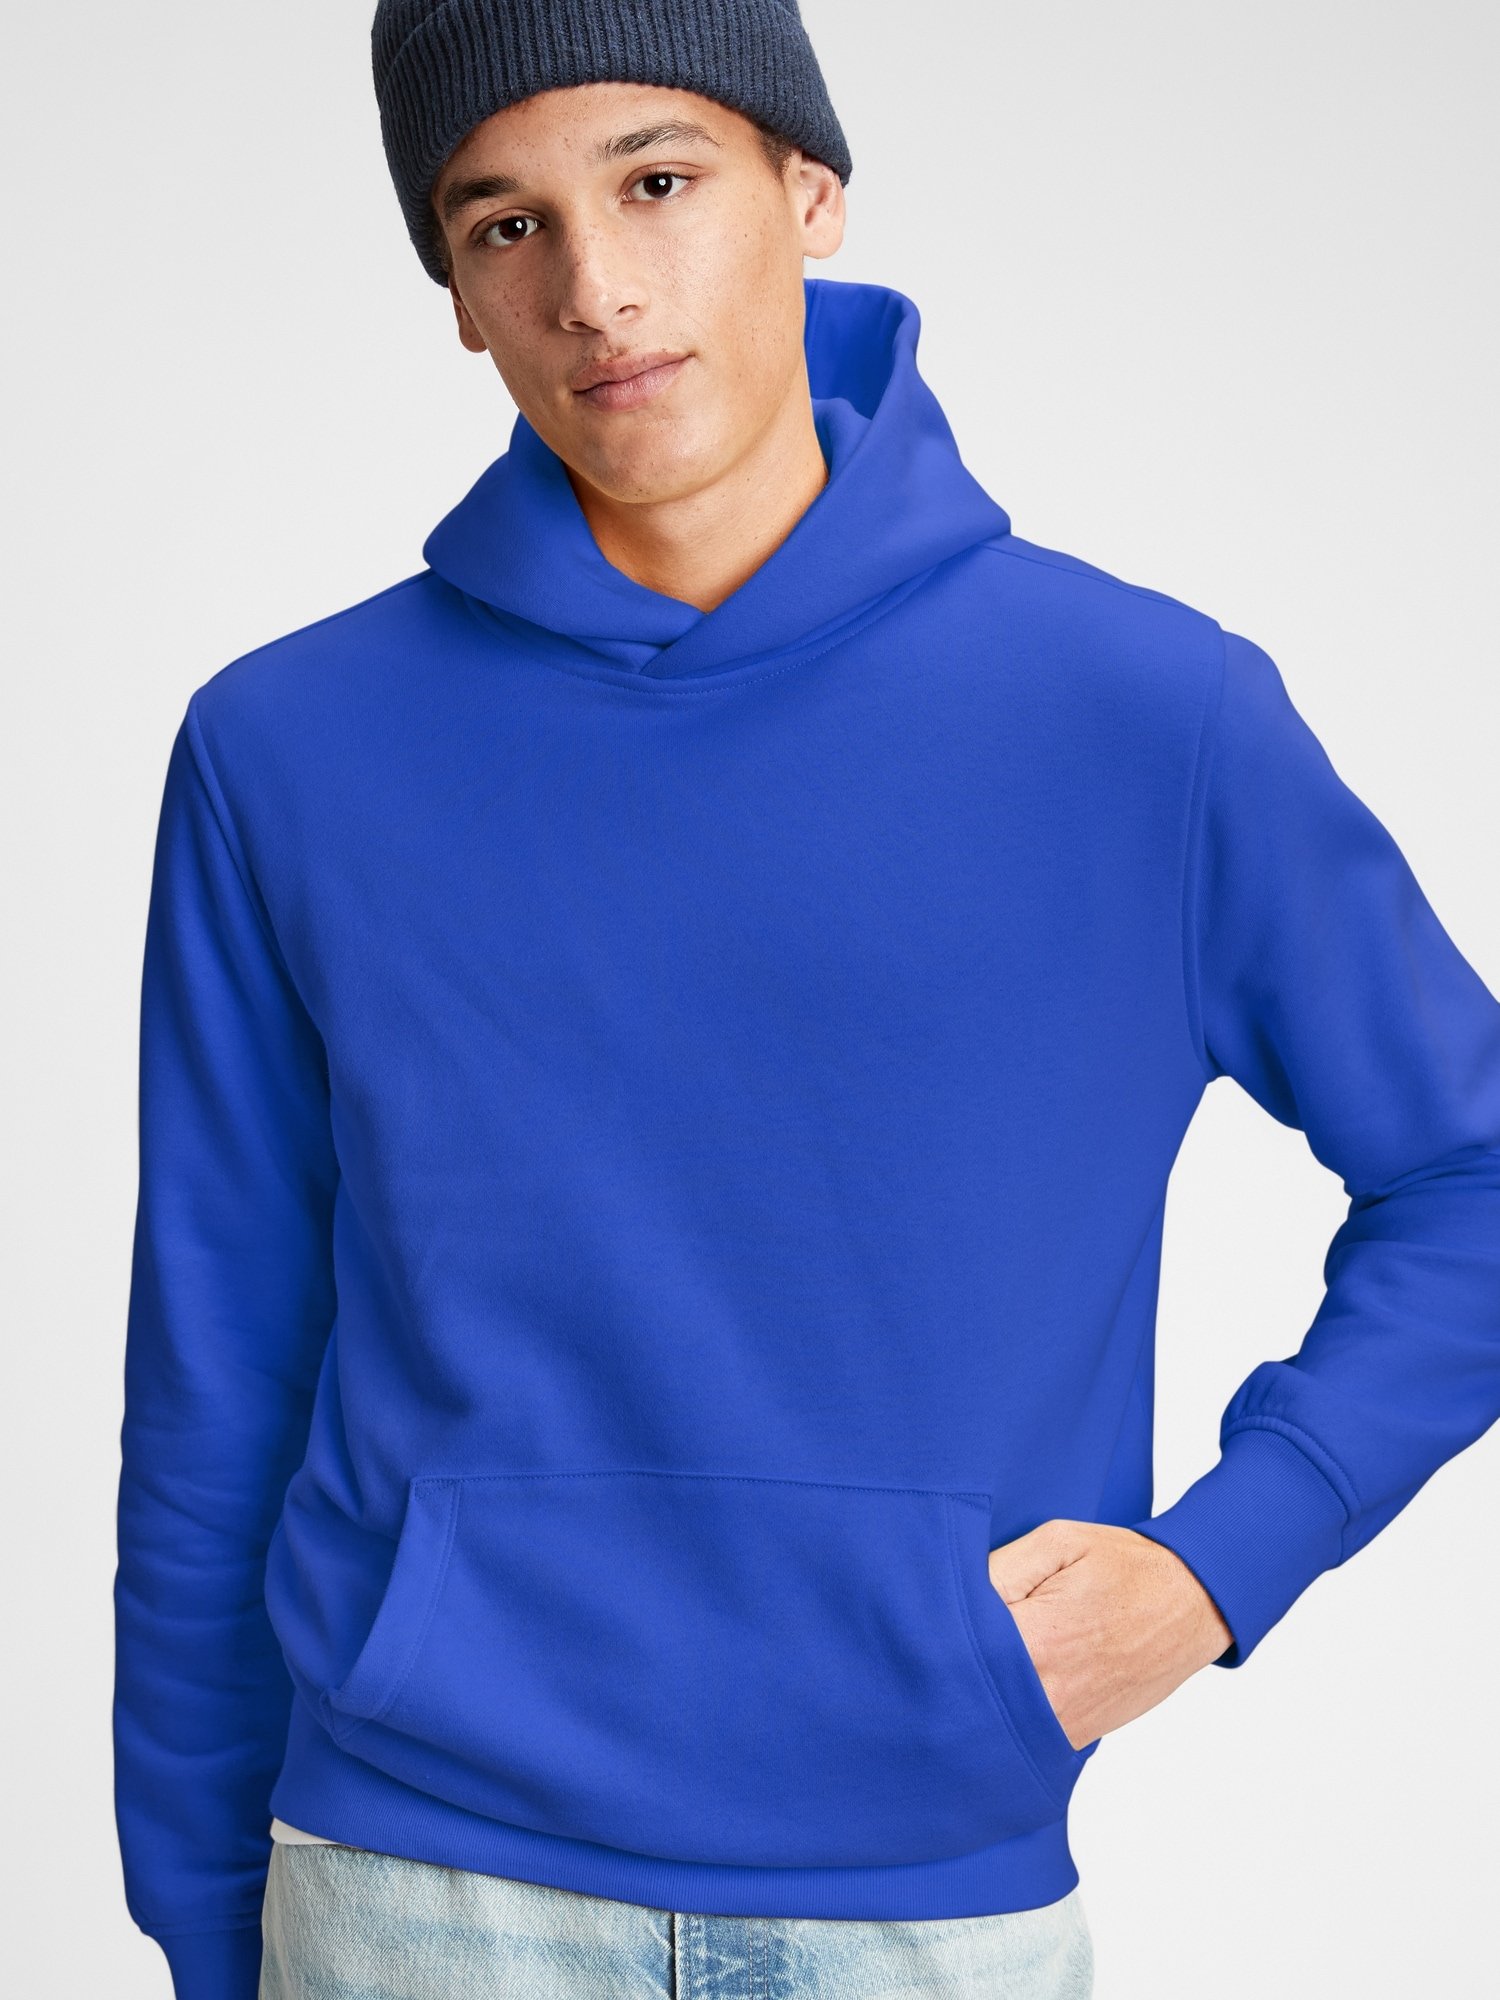 Vintage Soft Pullover Kapüşonlu Sweatshirt product image